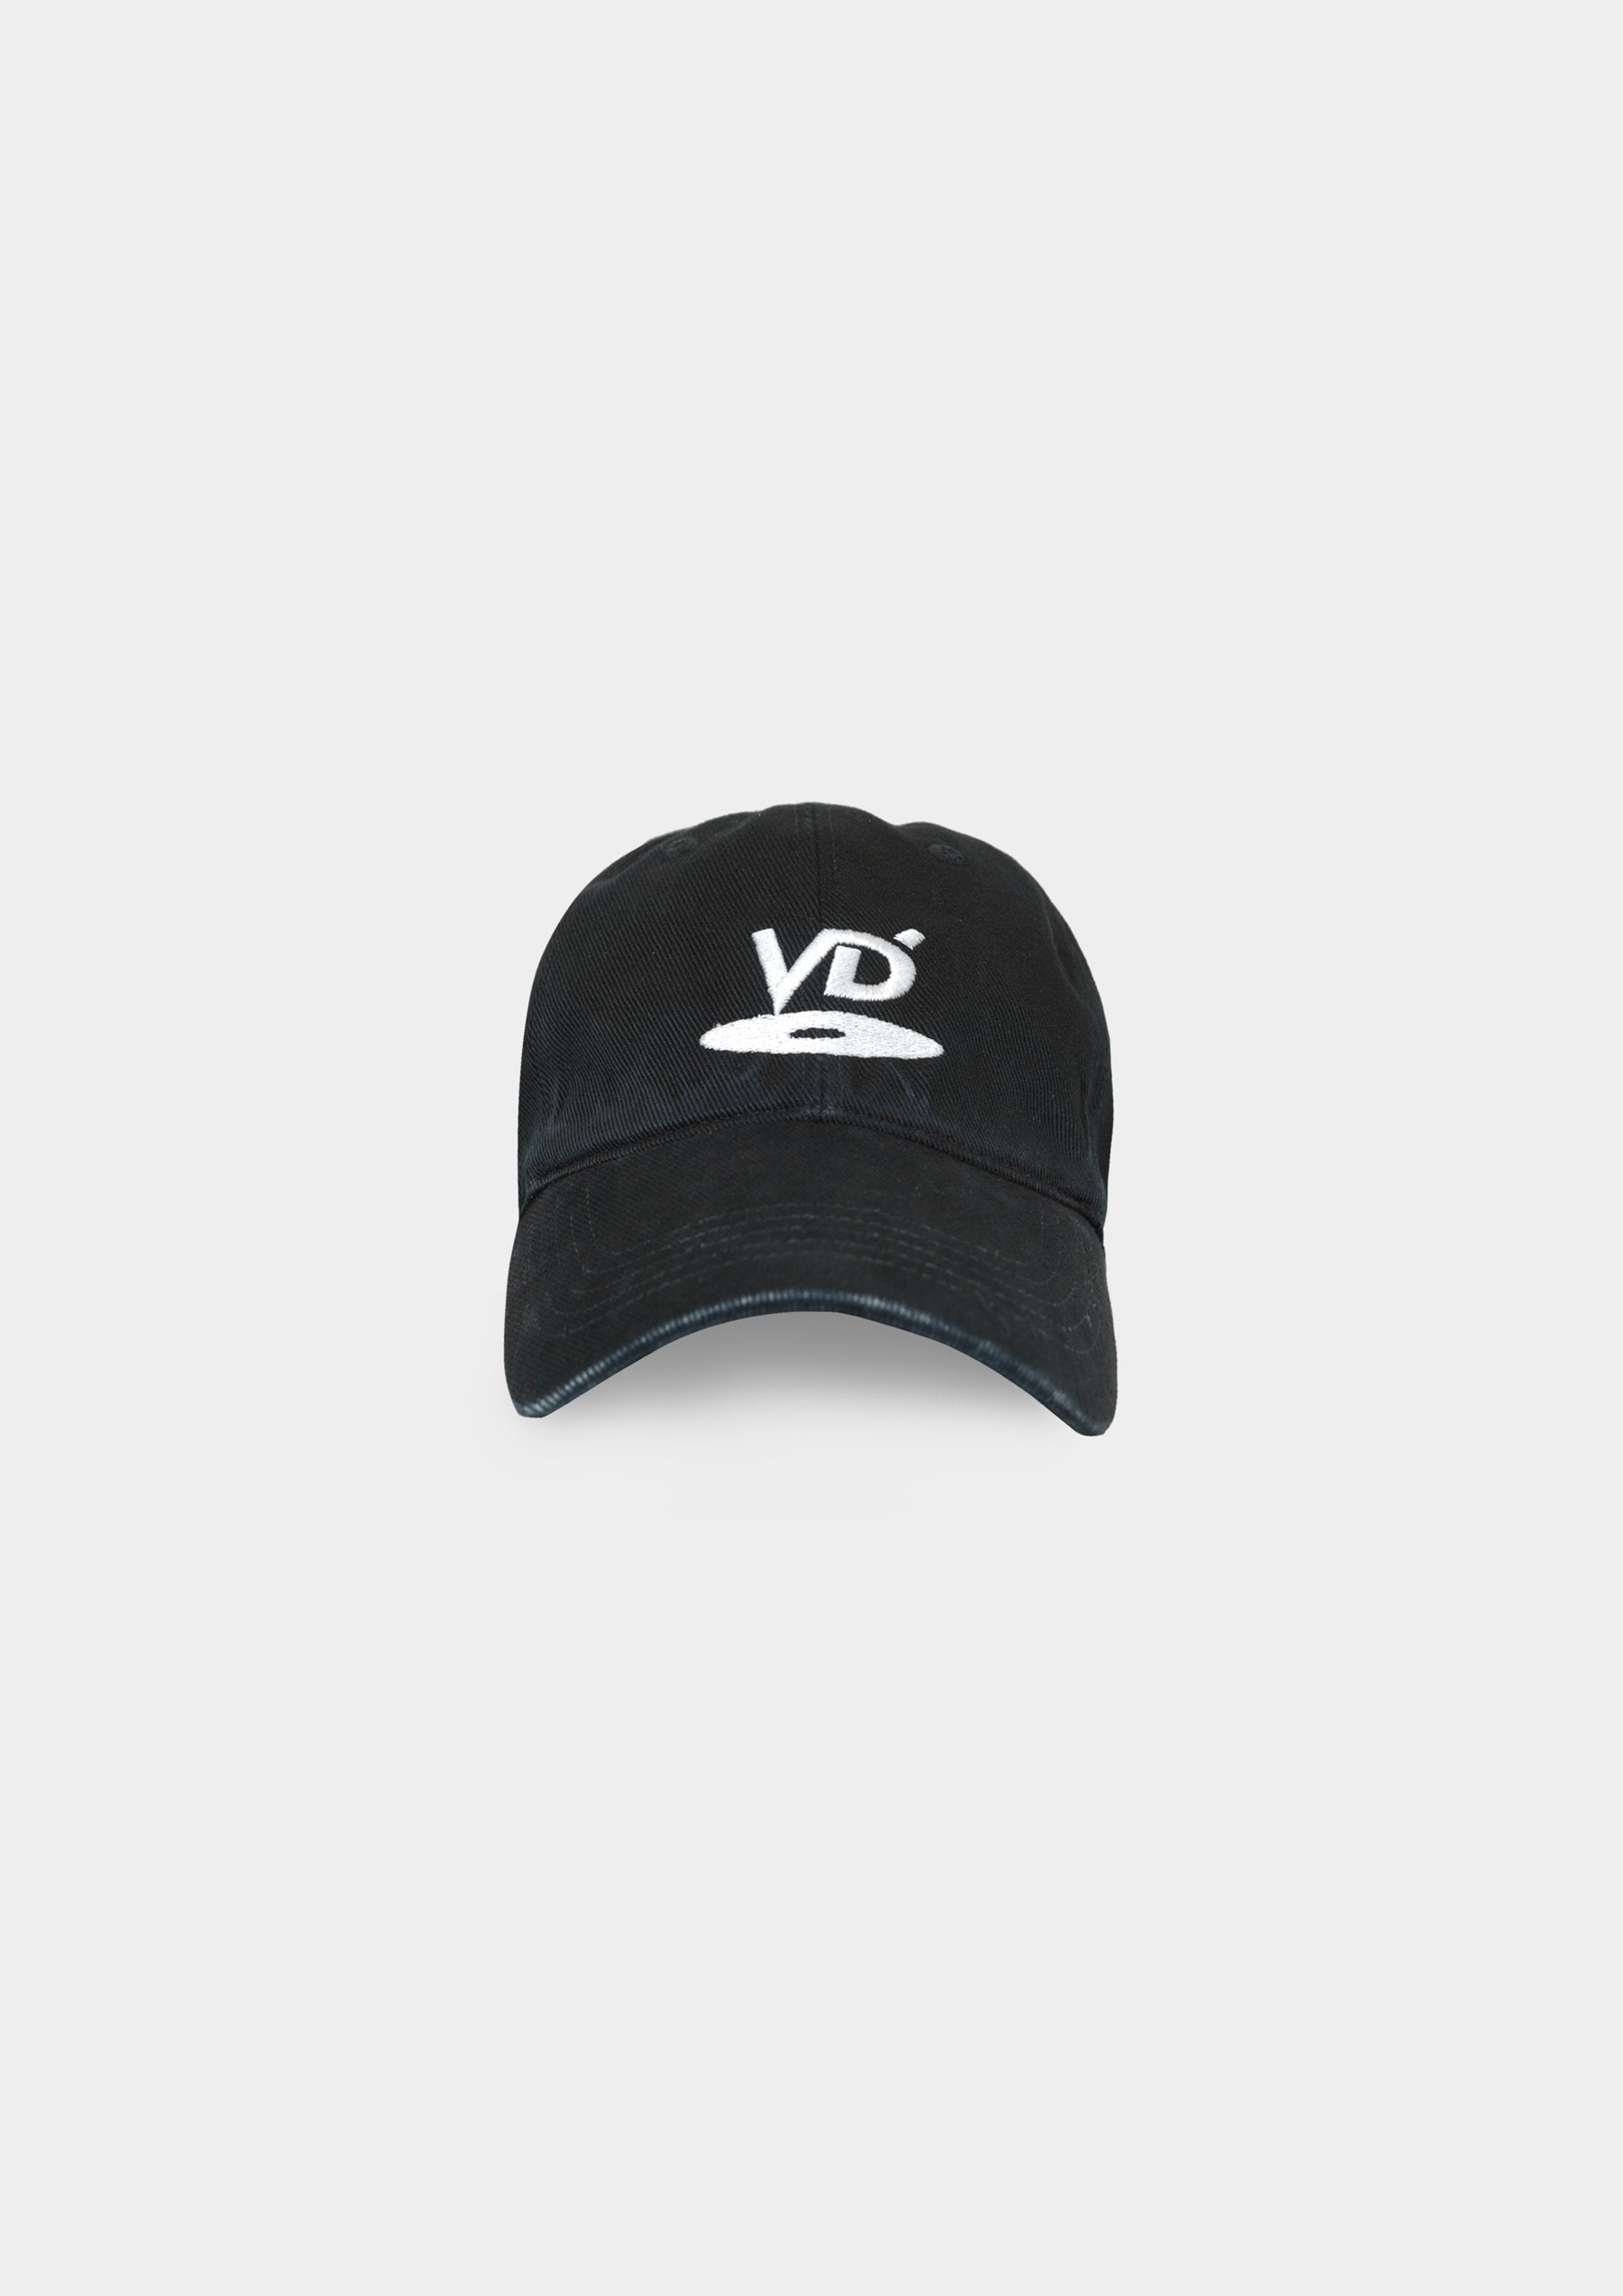 VD VINTAGE DENIM CAP (VTG BLACK)